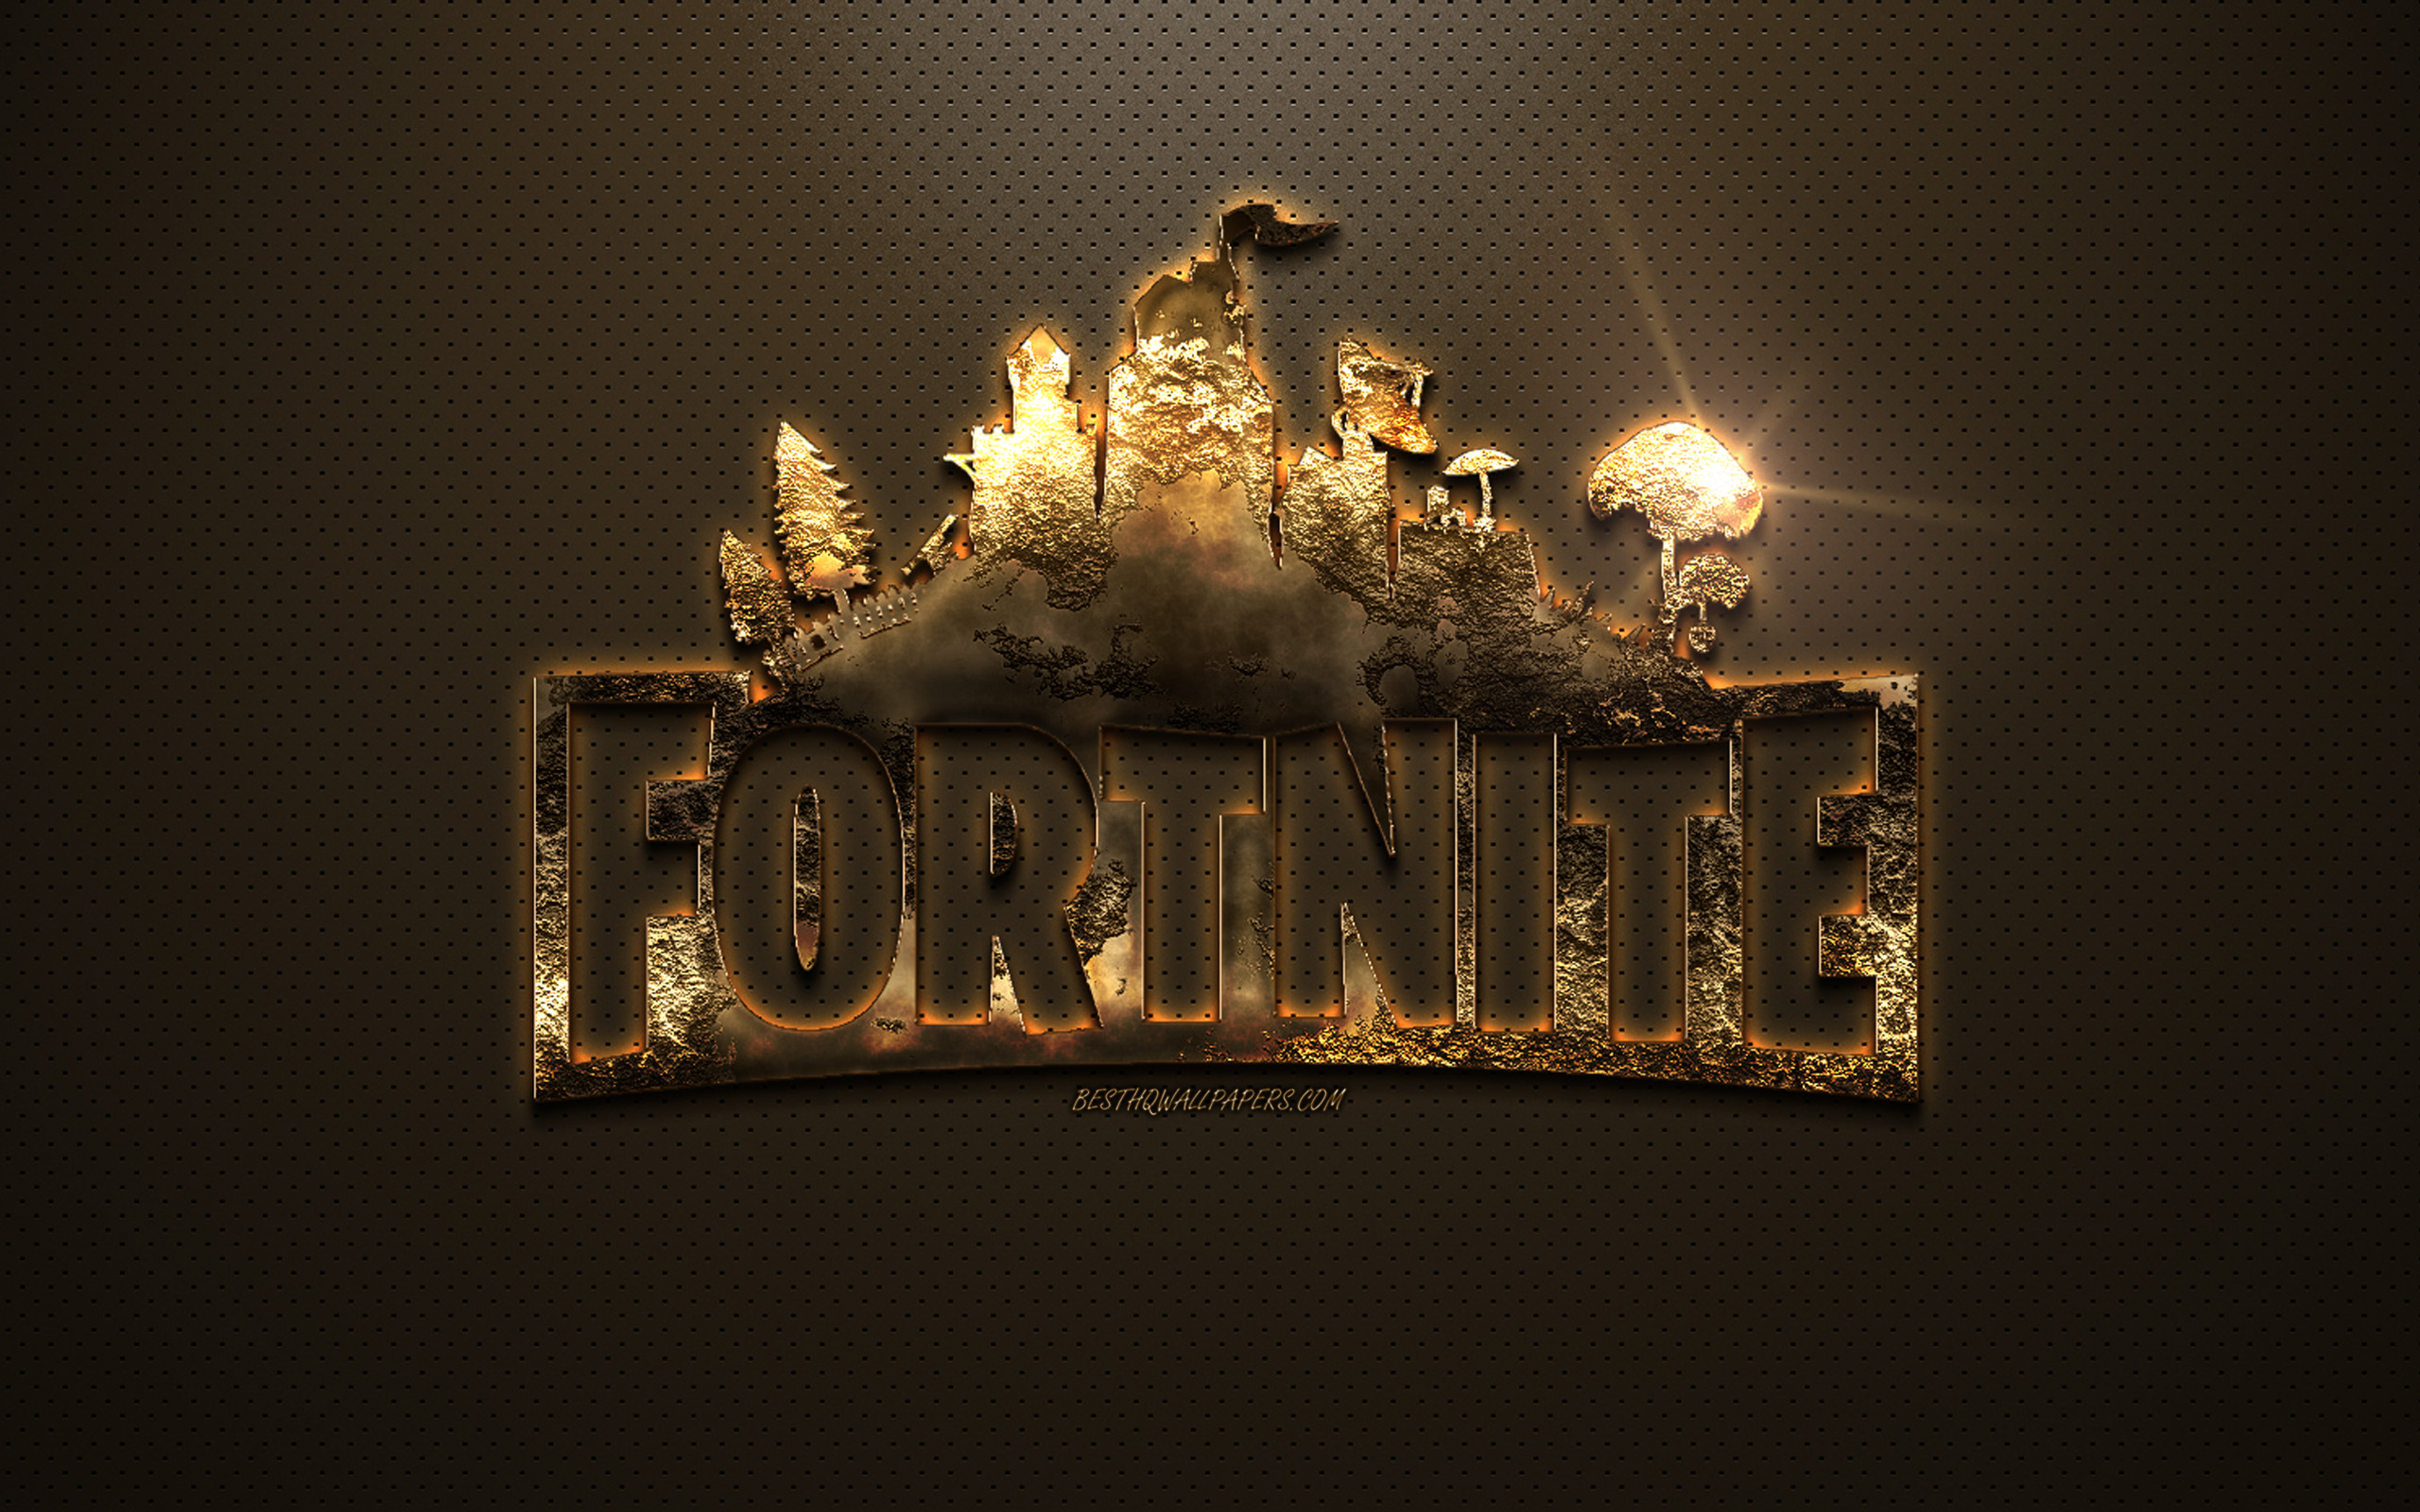 Fortnite Logo Wallpapers